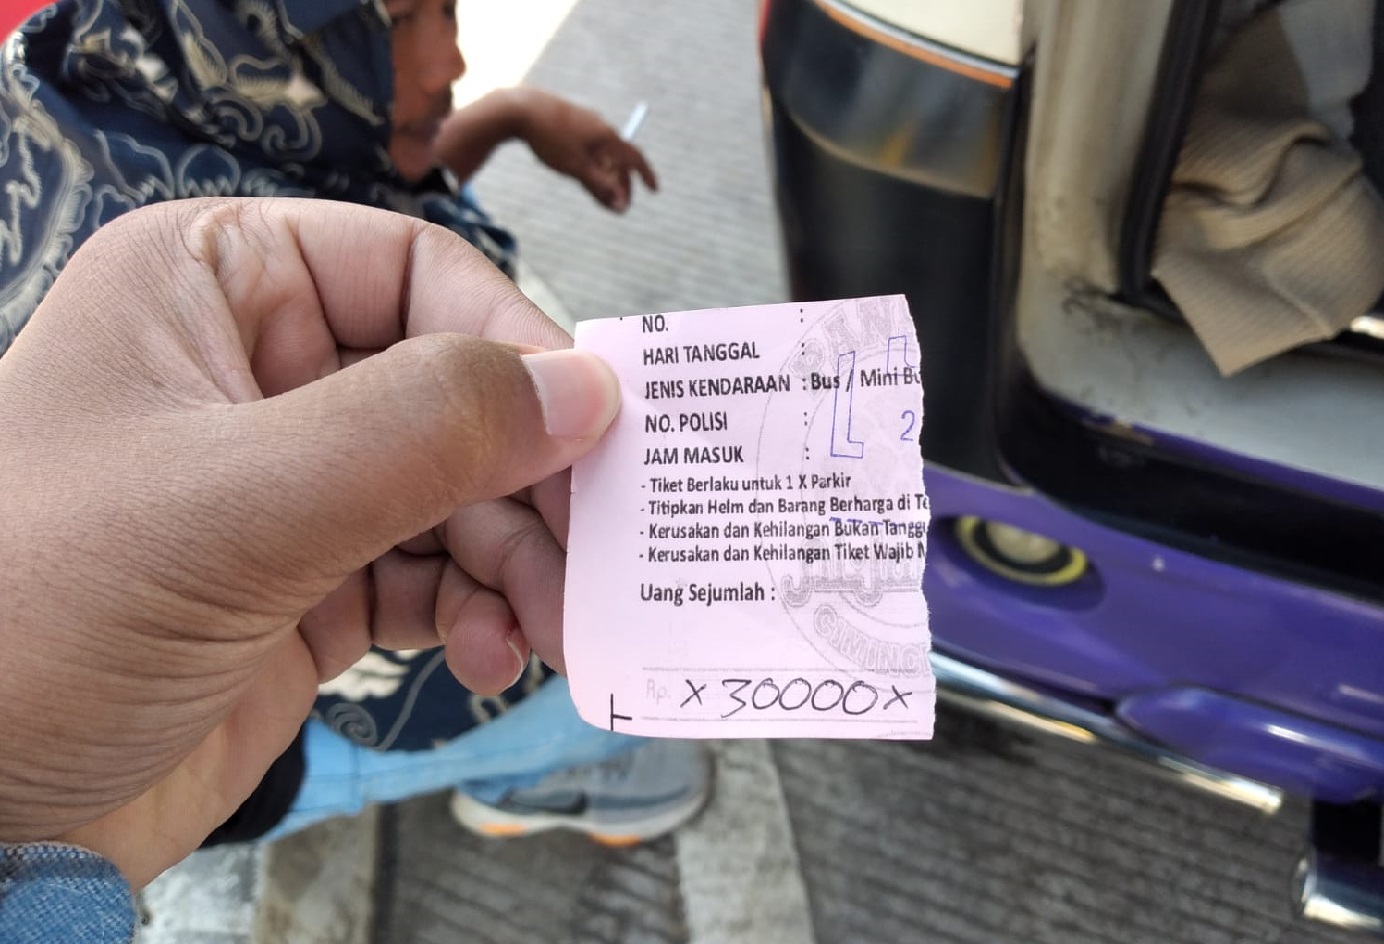 Seorang oknum warga mengaku pertugas parkir menghampiri sopir yang sedang mengantar masyarkat yang berkunjung ke Masjid Al Jabbar Kota Bandung